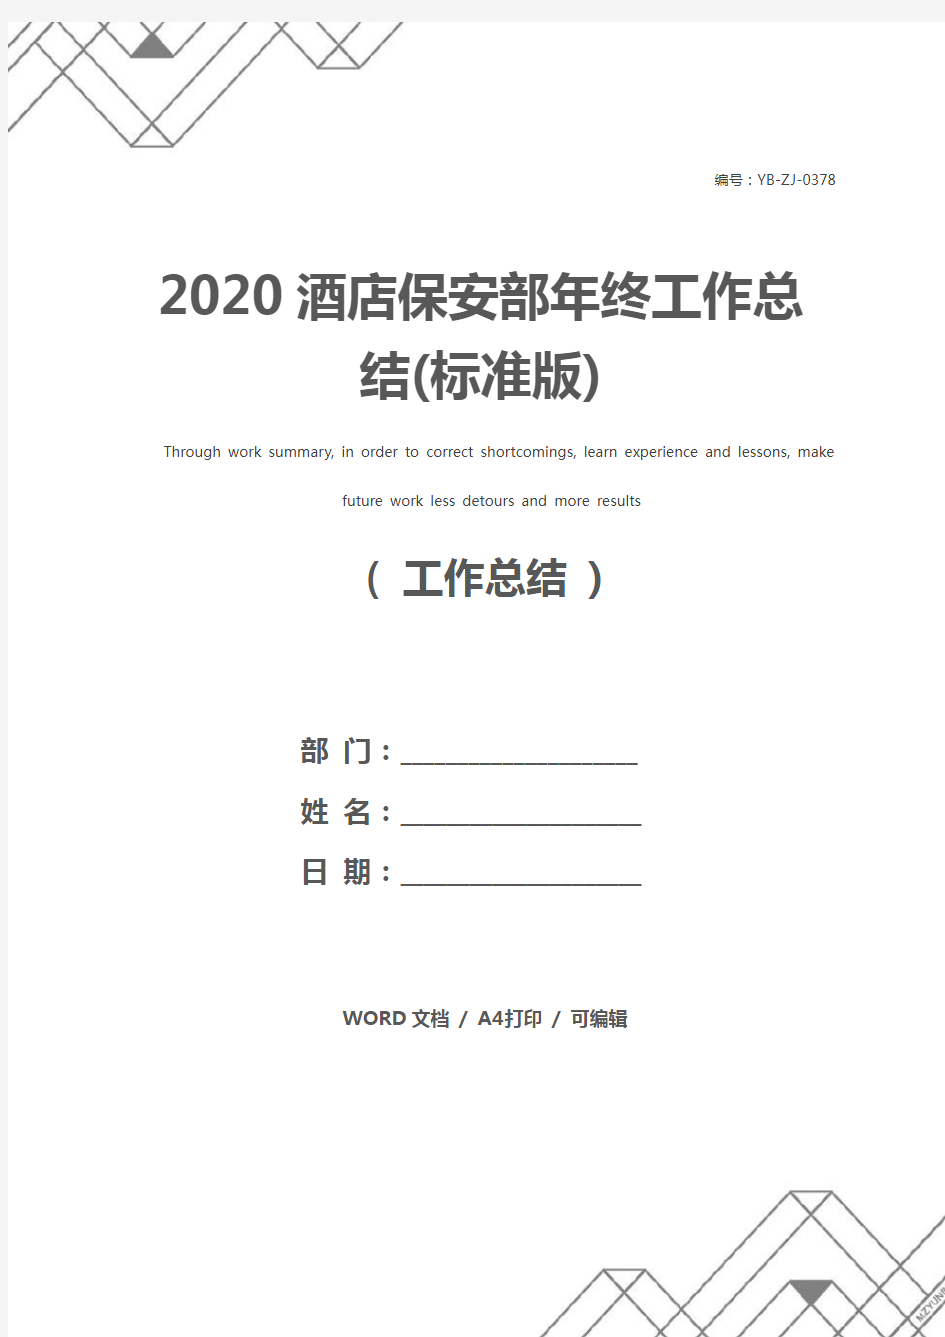 2020酒店保安部年终工作总结(标准版)